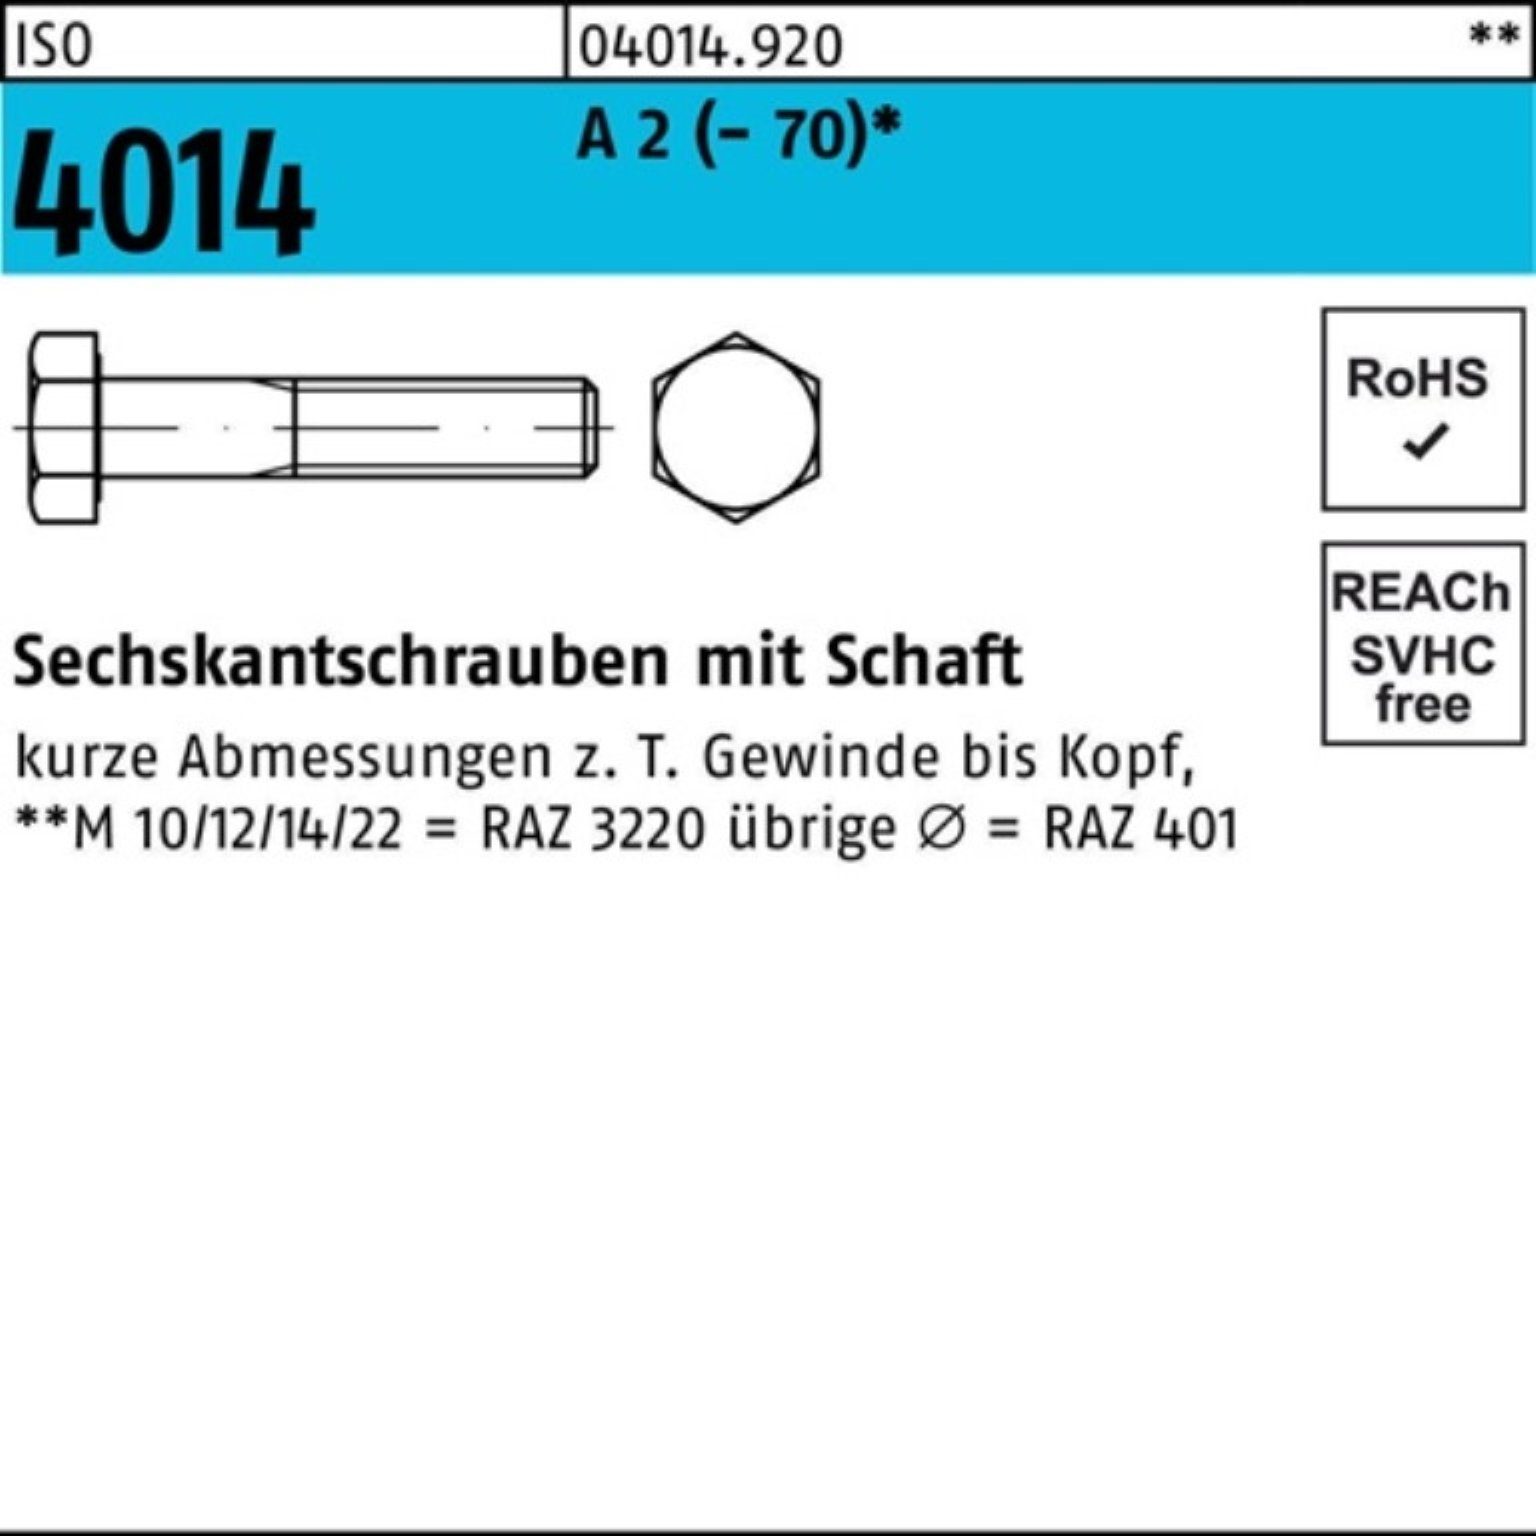 Bufab Sechskantschraube 100er Pack Sechskantschraube ISO 4014 Schaft M10x 100 A 2 (70) 50 St